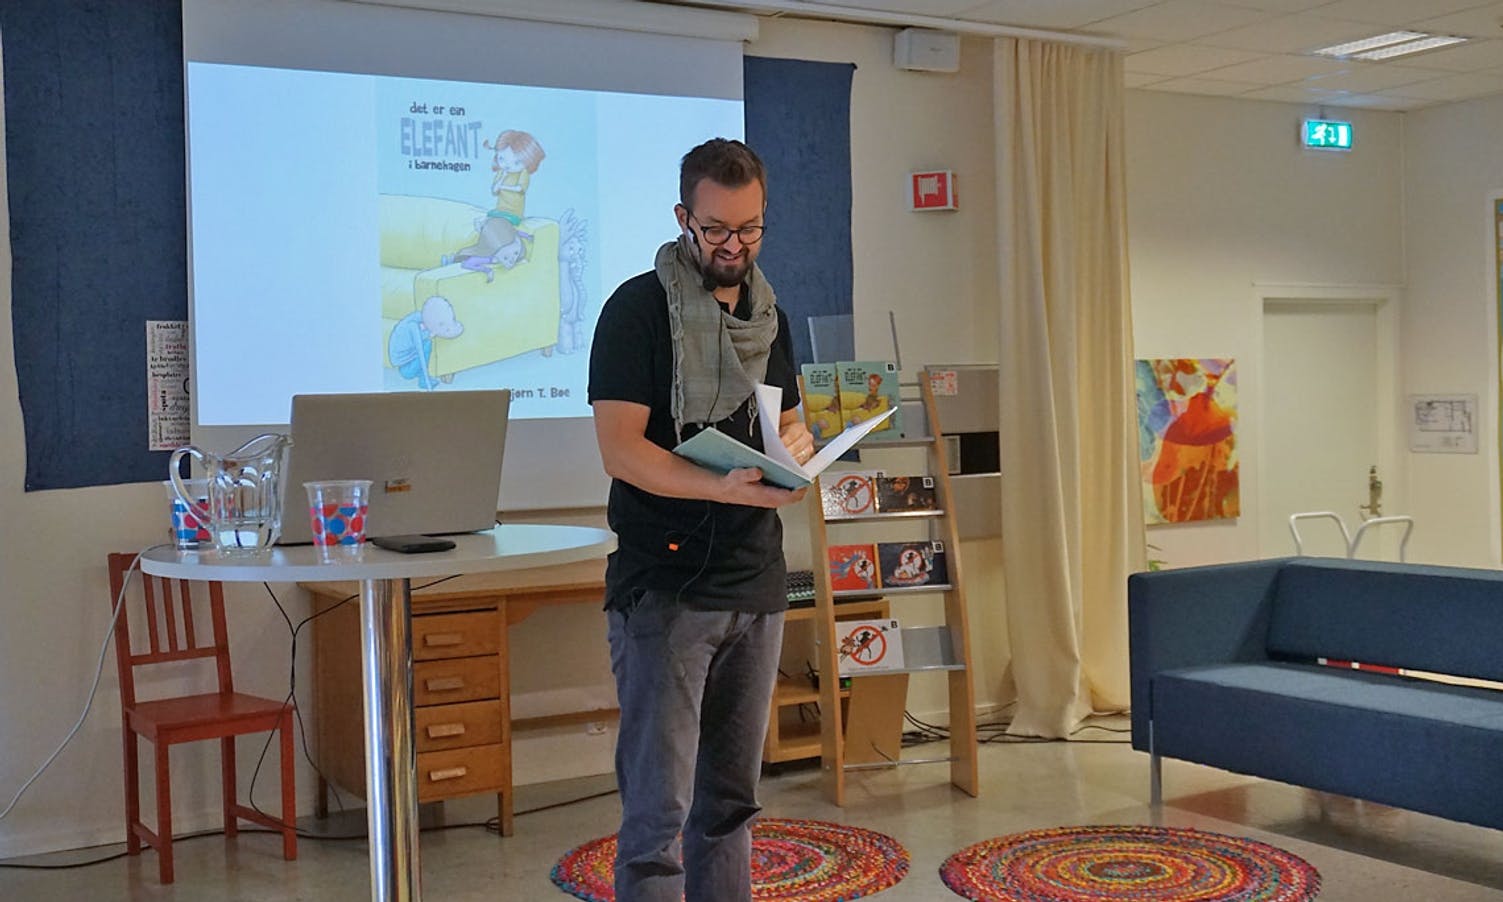 Bjørn Terje Bøe las boka «Det er ein elefant i barnehagen».  (Foto: KOG)